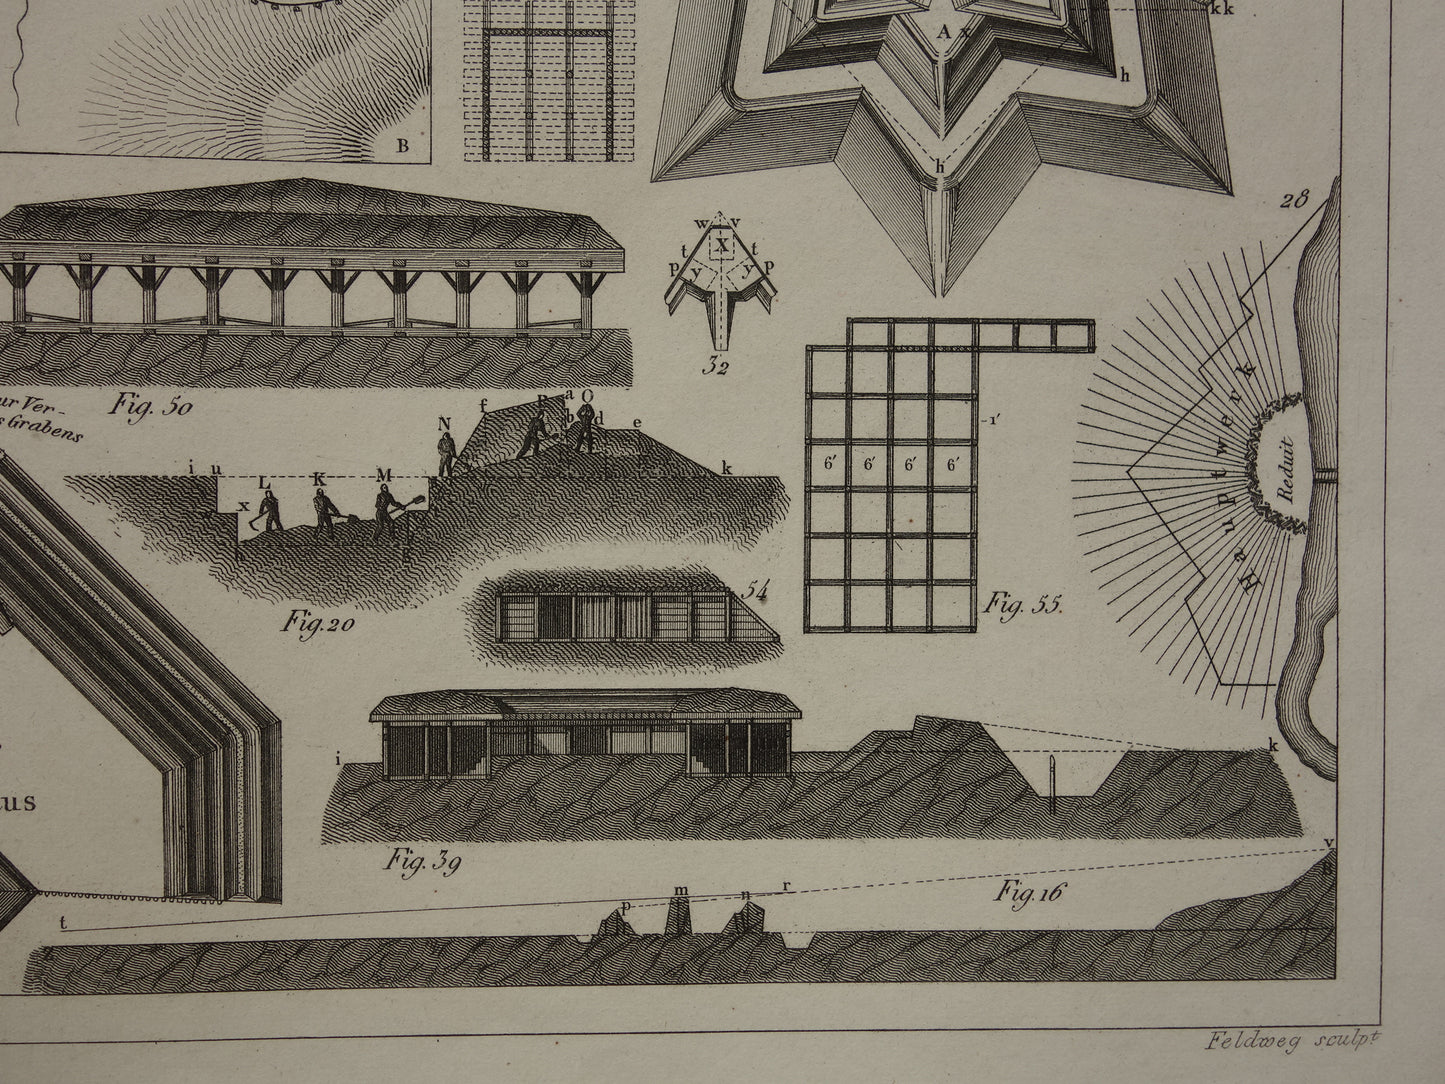 Oude prent over fortificaties - originele antieke militaire illustratie - vestingwerken forten fort architectuur print